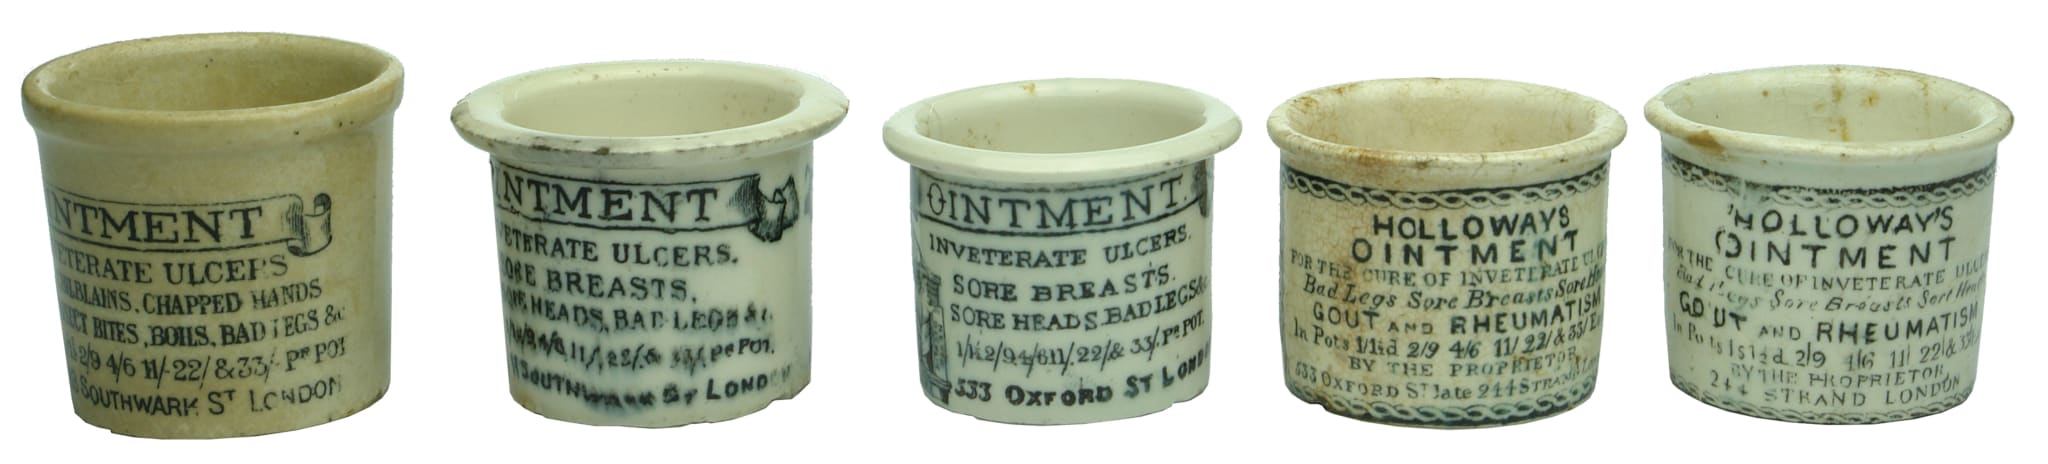 Holloways Ointment Antique Ceramic Pots